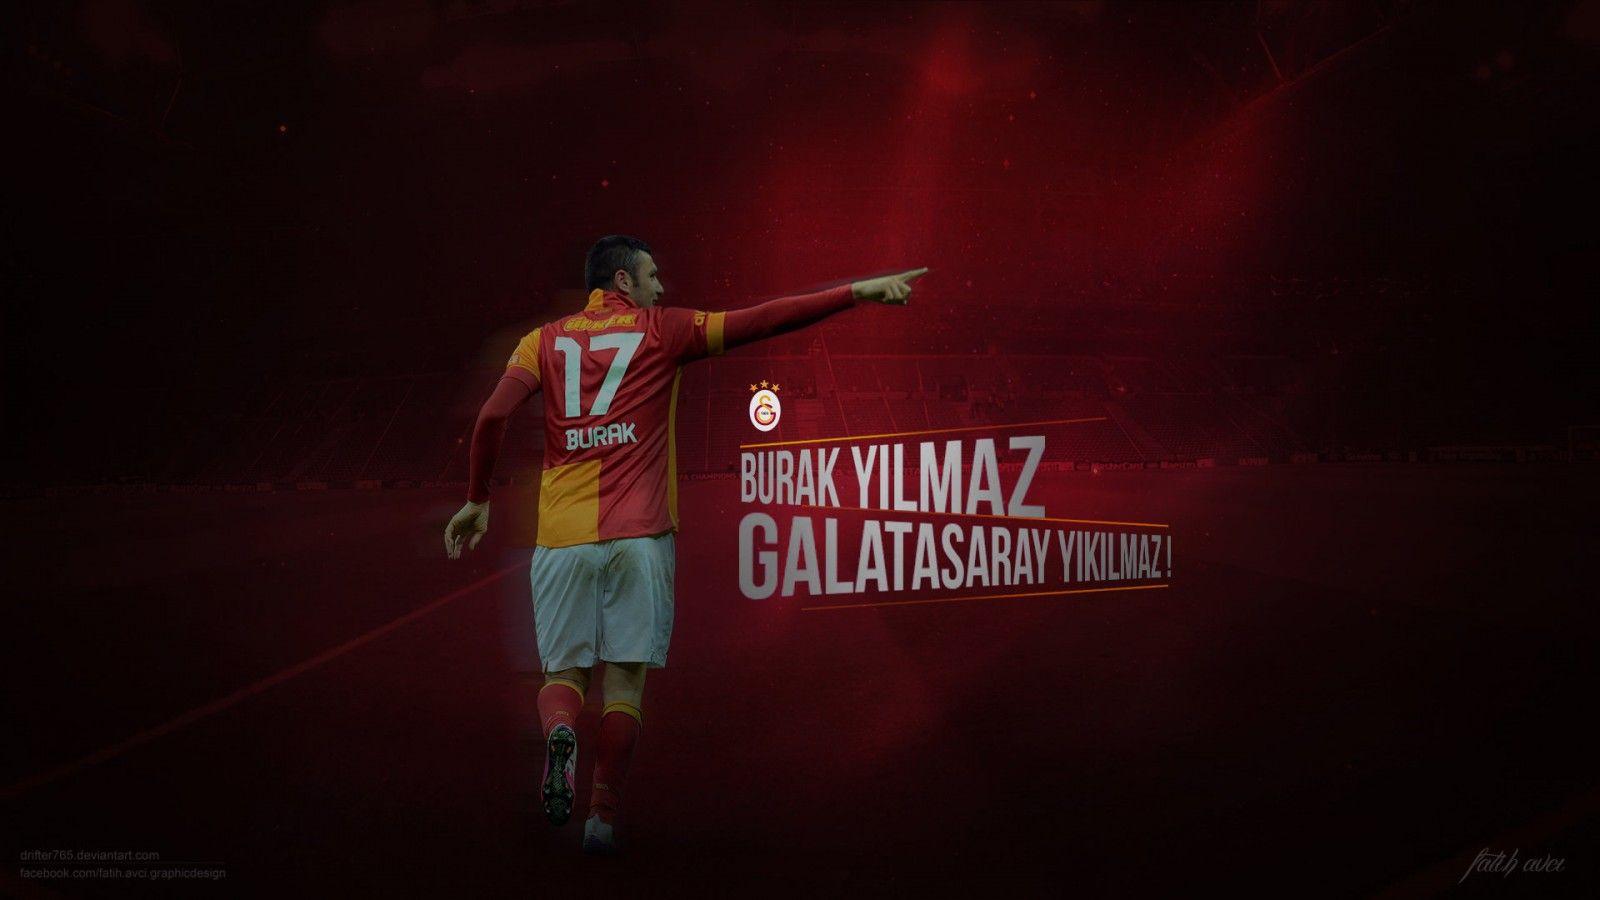 Burak Yilmaz Galatasaray 2013 Wallpaper 1600x900